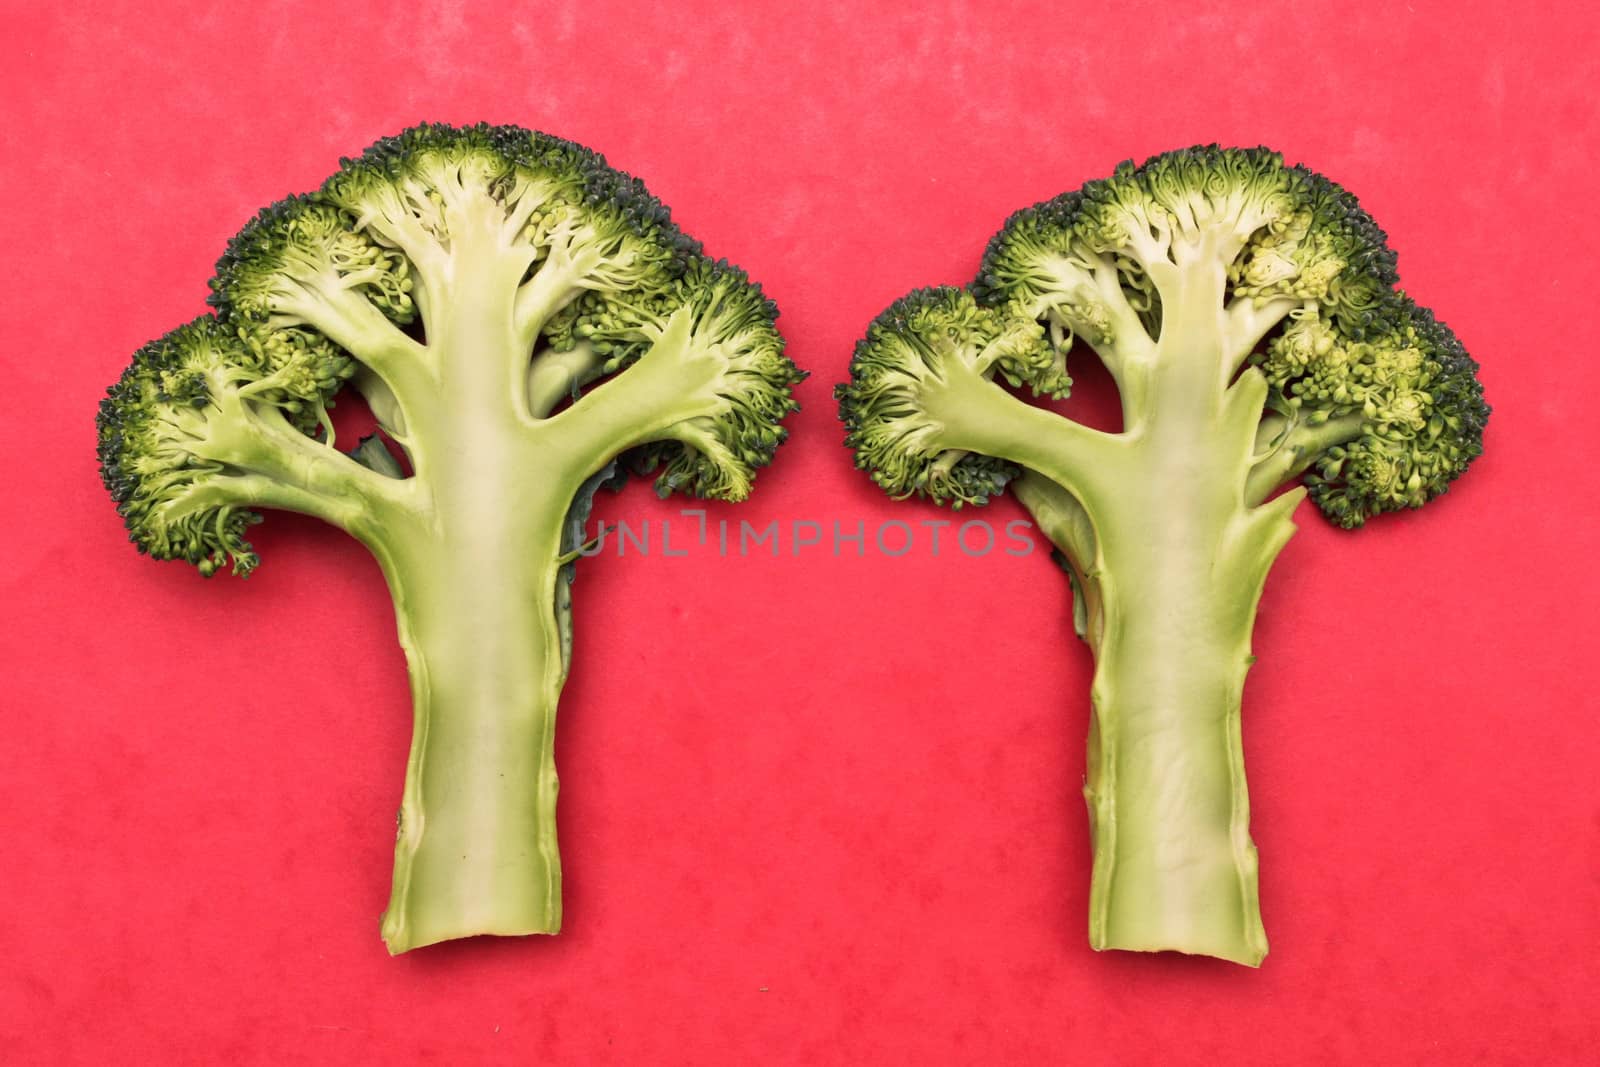 Broccoli by trgowanlock